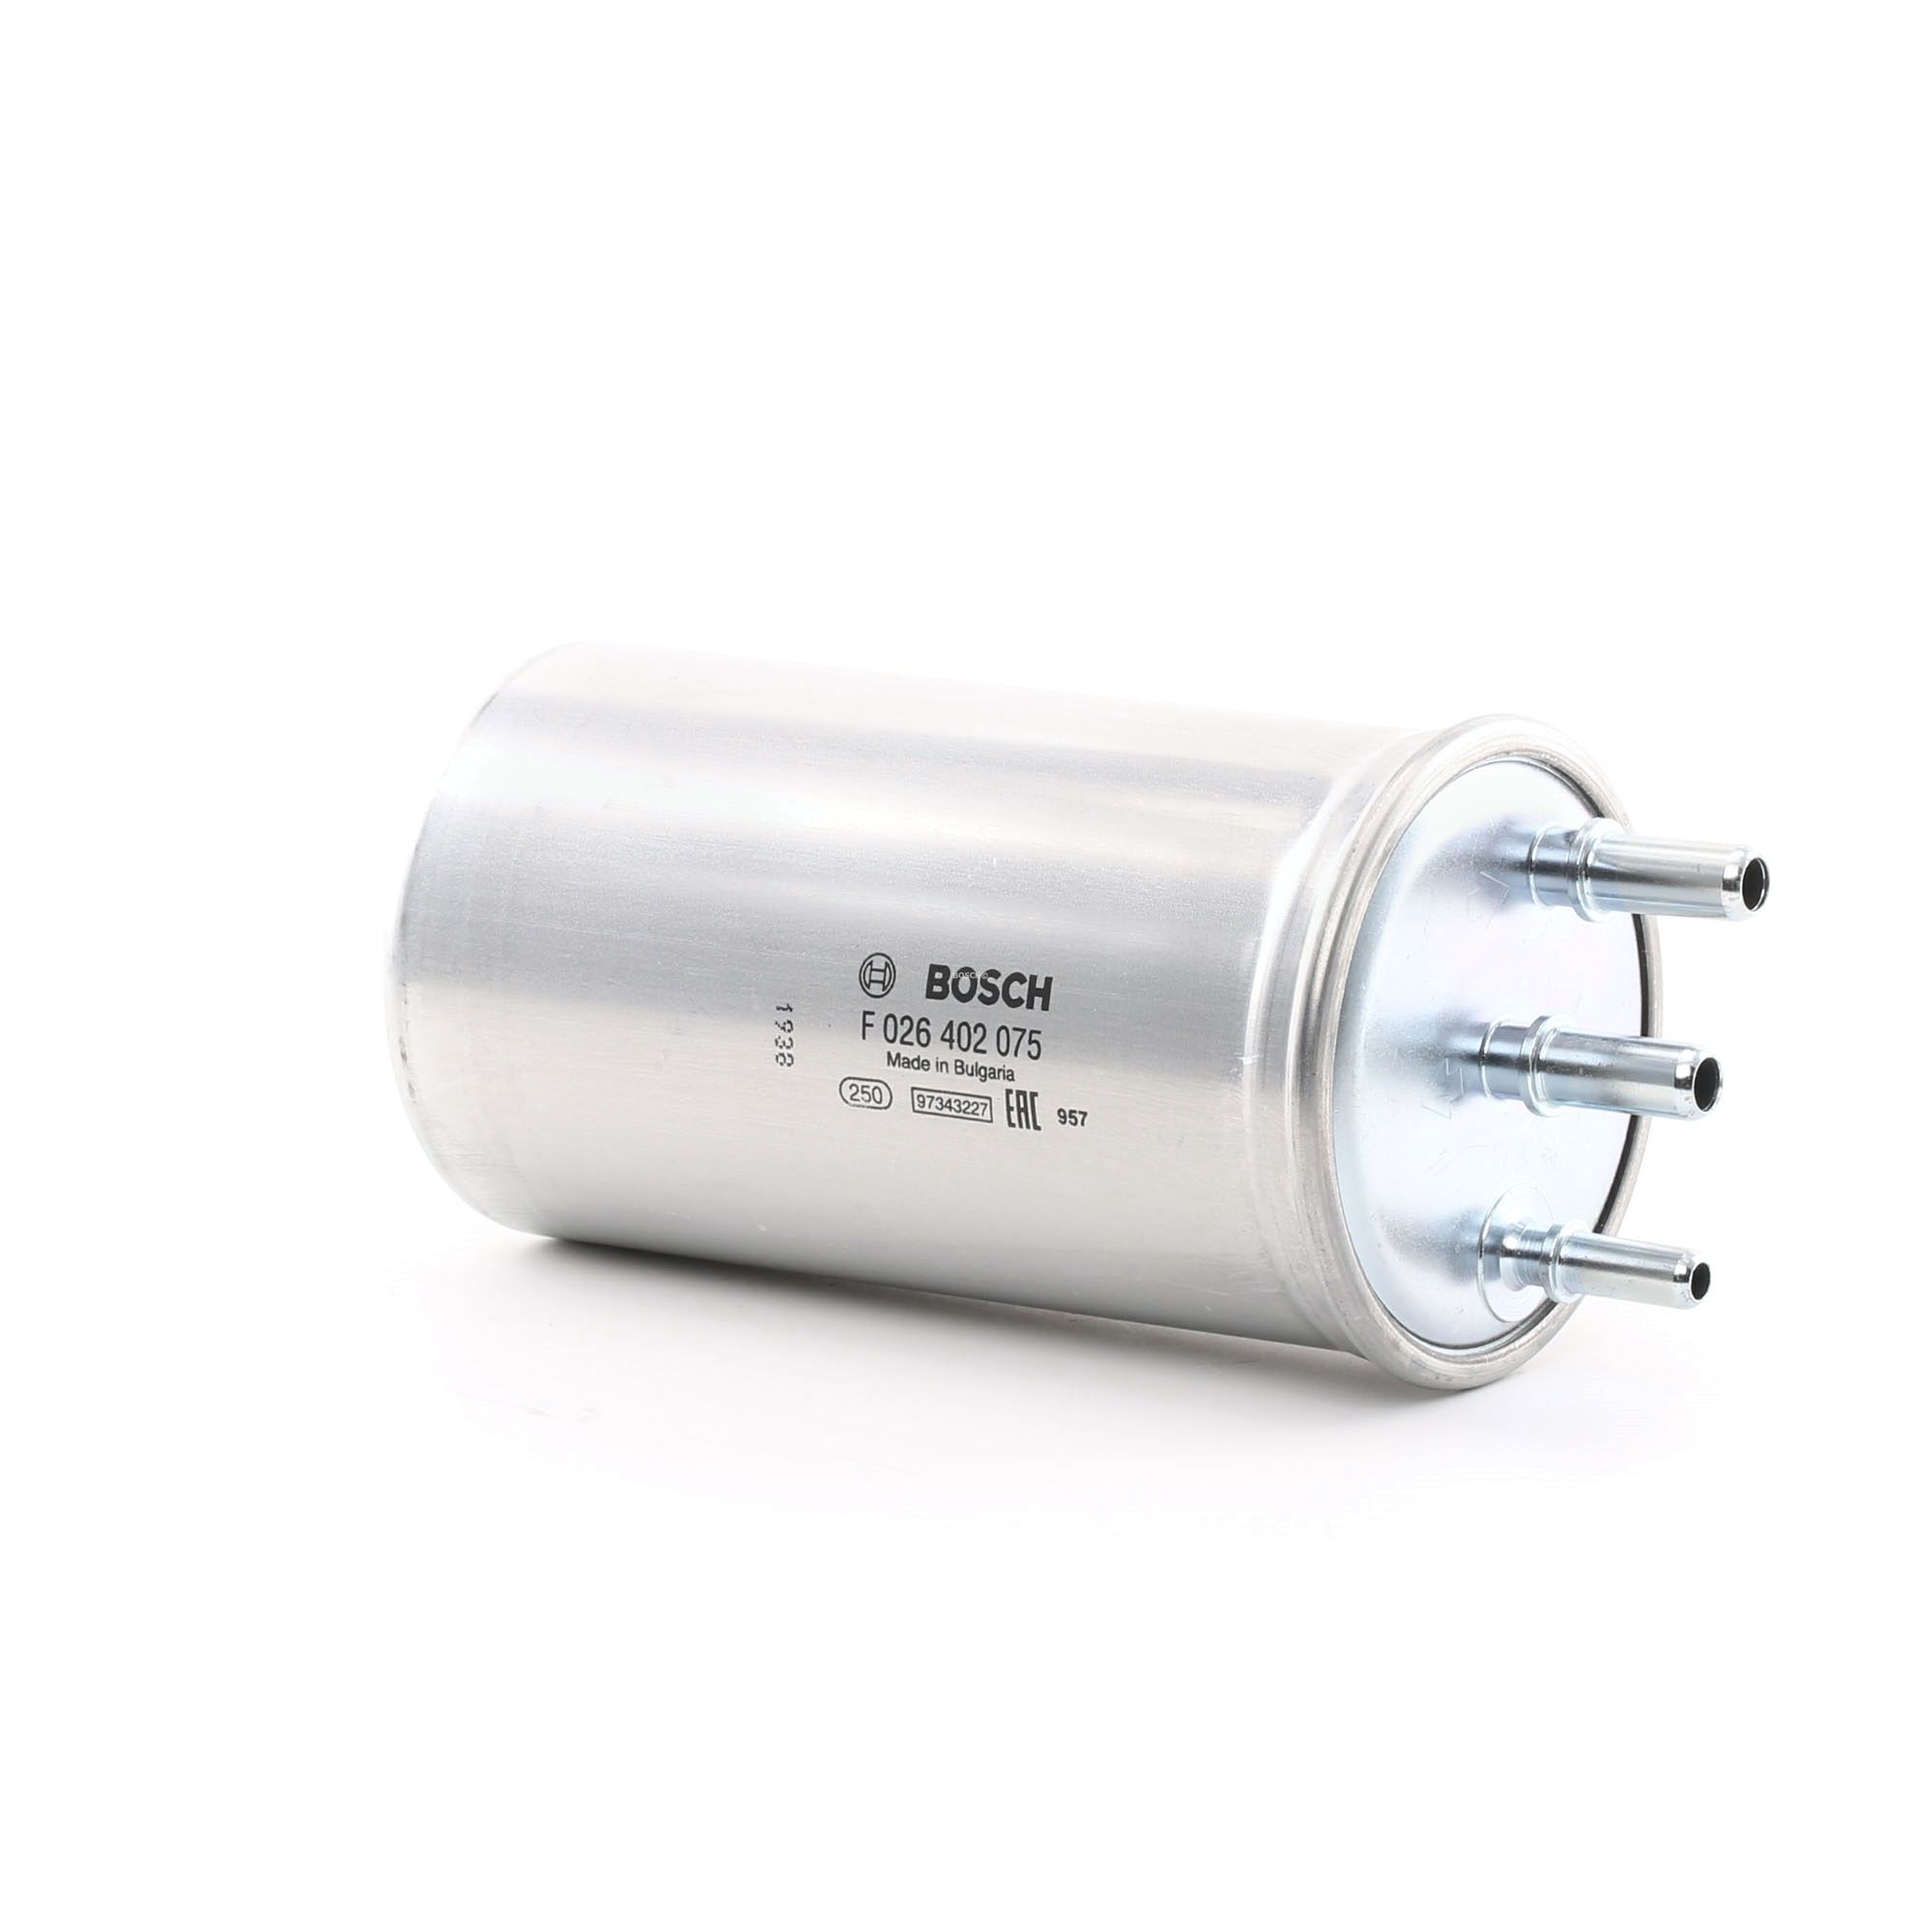 BOSCH F 026 402 075 Fuel filter In-Line Filter, 10mm, 10mm